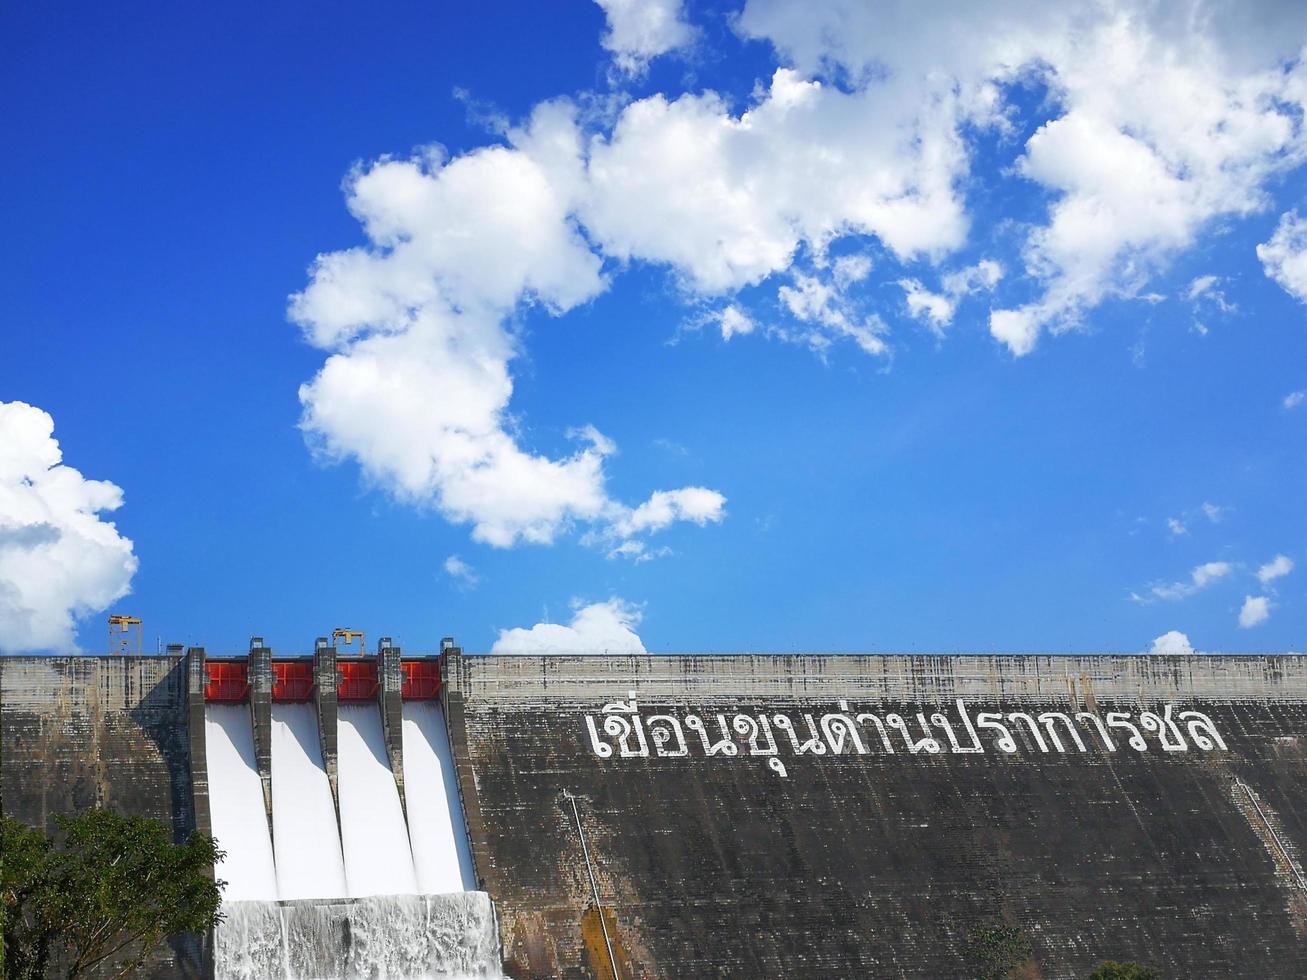 le texte blanc signifie barrage khun dan prakan chon. le barrage d'irrigation libère de l'eau. ciel bleu clair et nuages blancs. principales attractions province de nakhon nayok, thaïlande photo